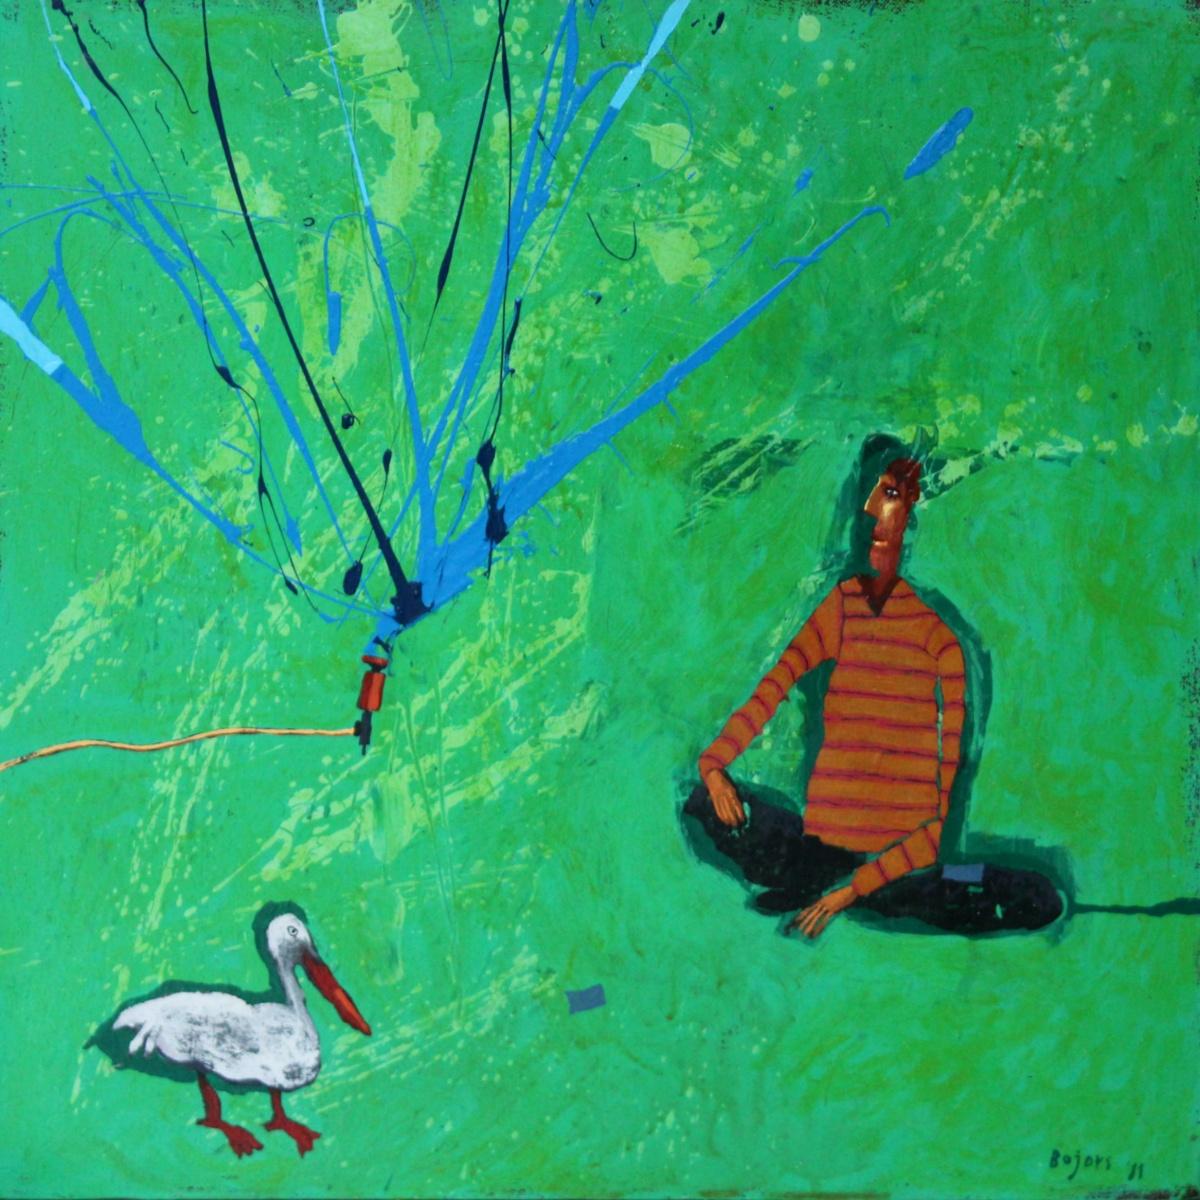 Retour avec un oiseau - Peinture figurative à l'acrylique, paysage, vert vibrant